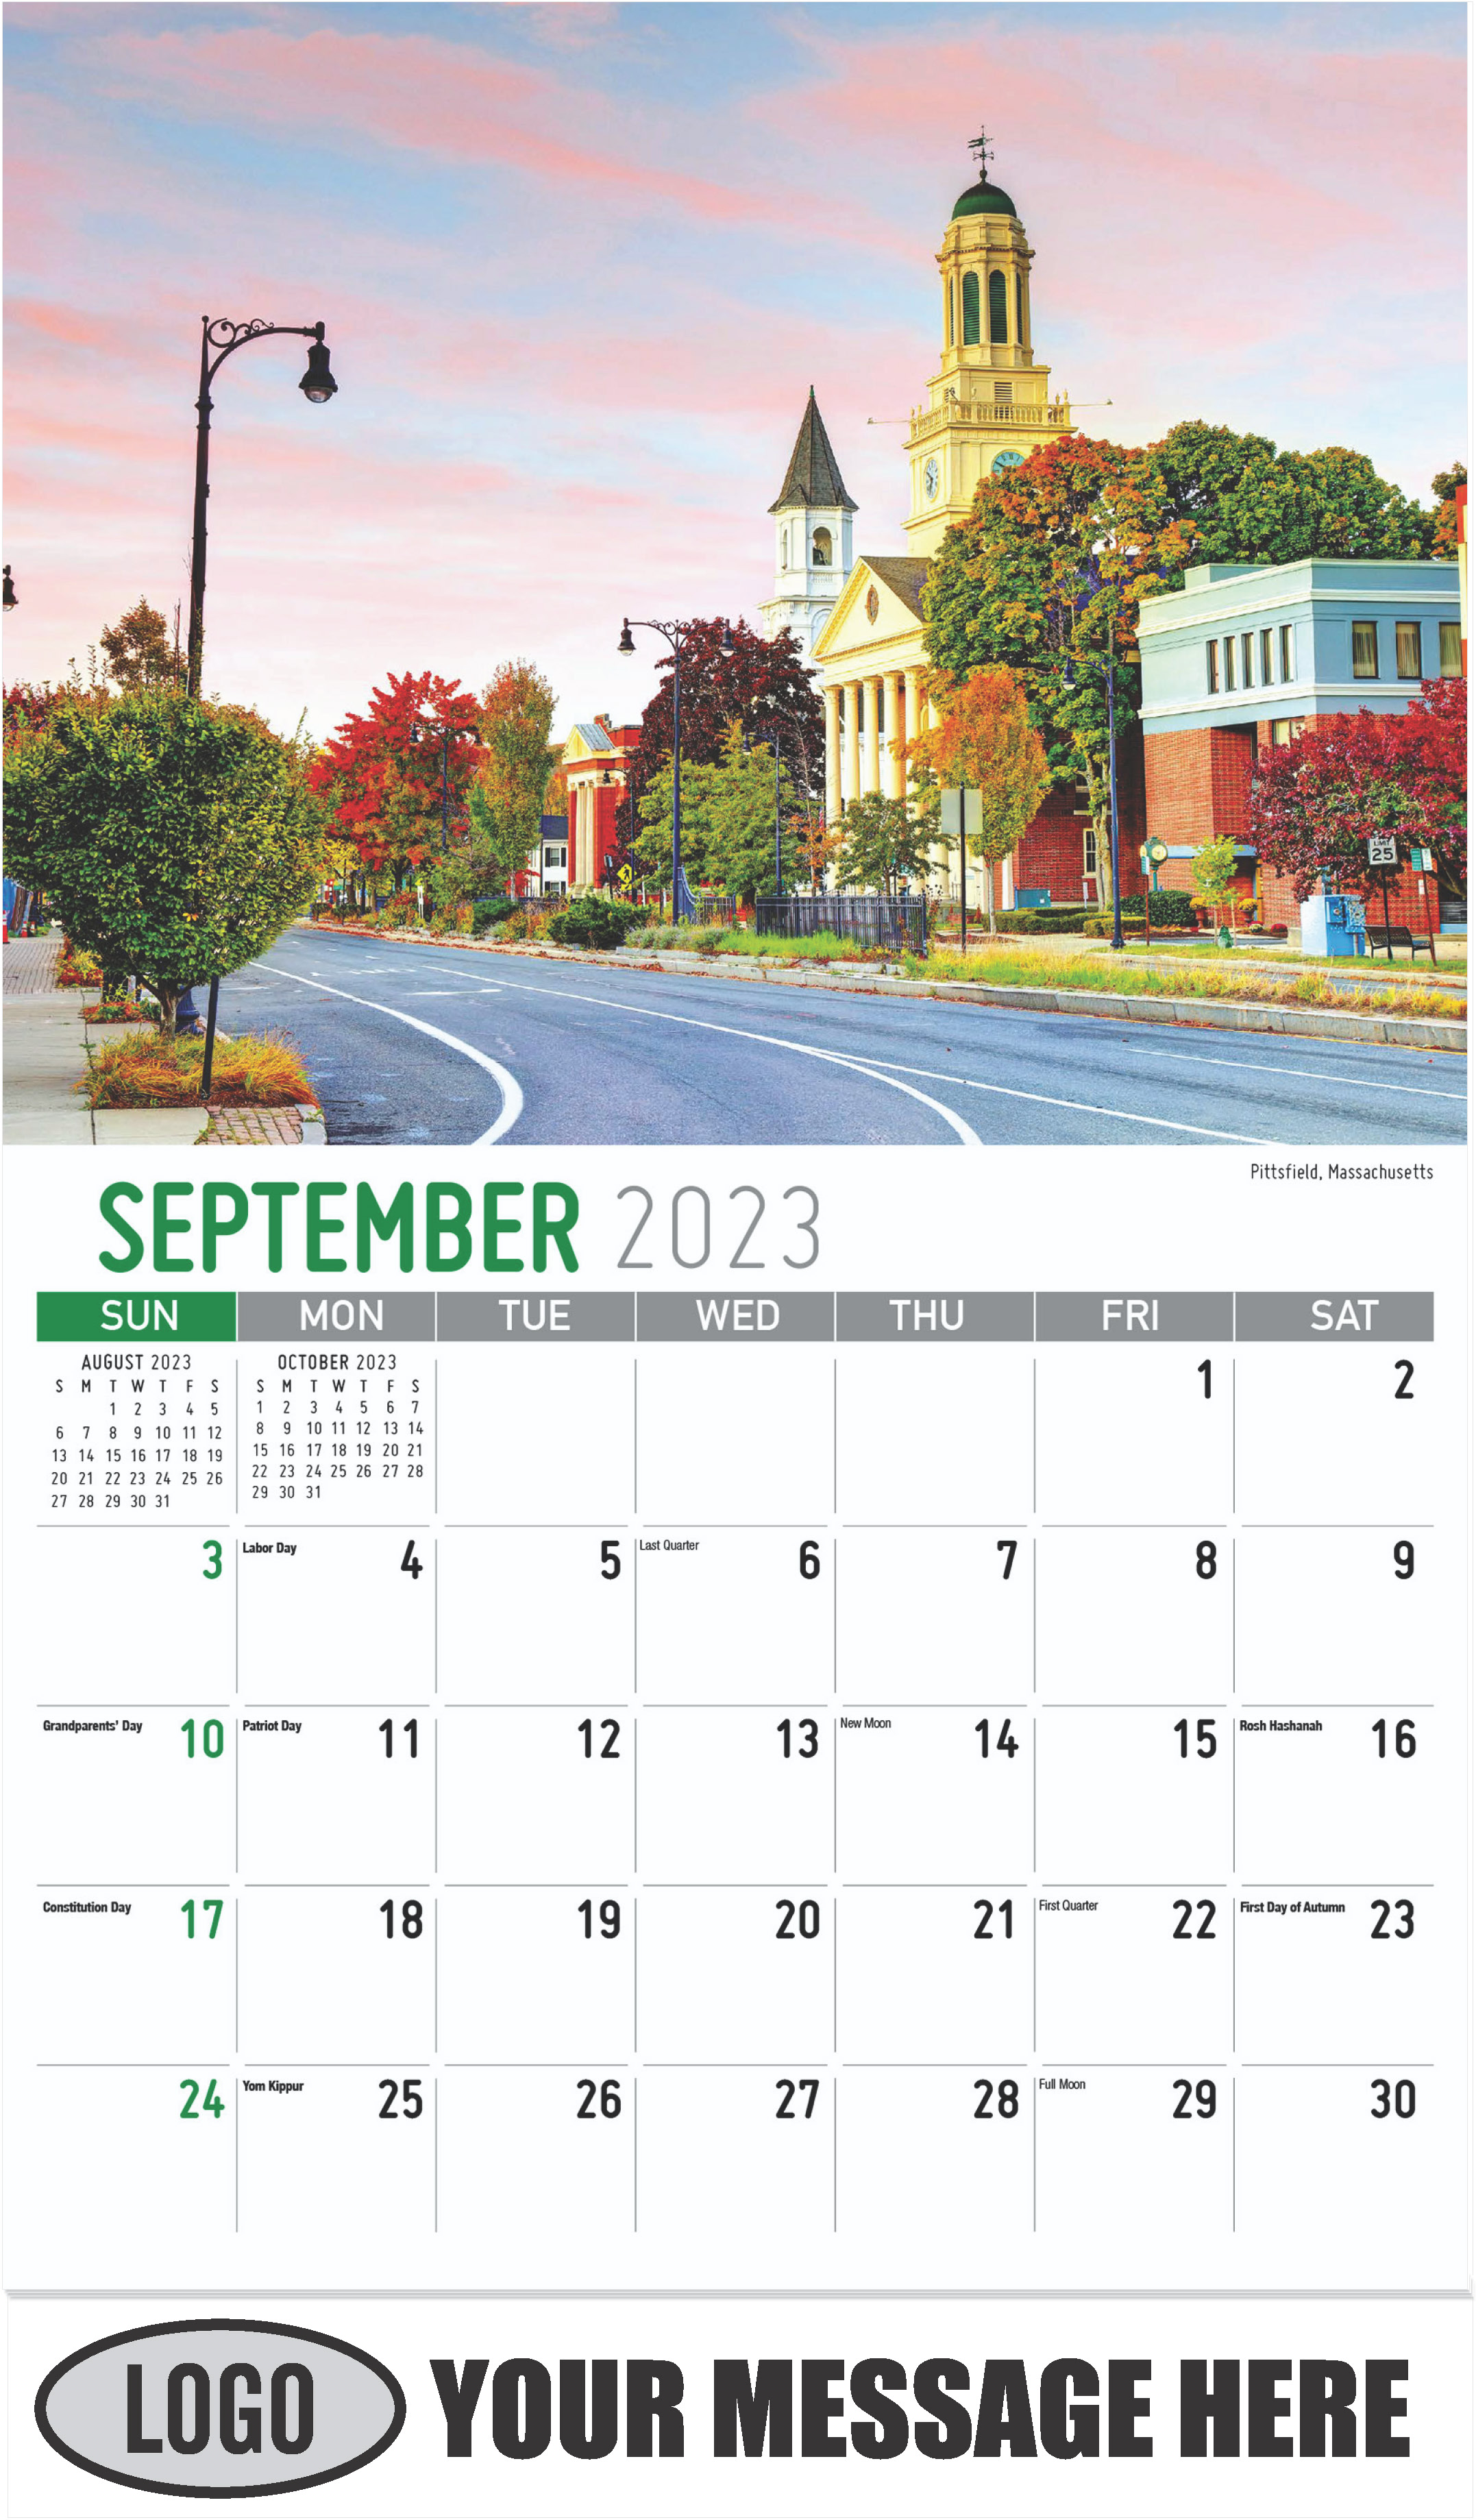 Pittsfield, Massachusetts - September - Scenes of New England 2023 Promotional Calendar